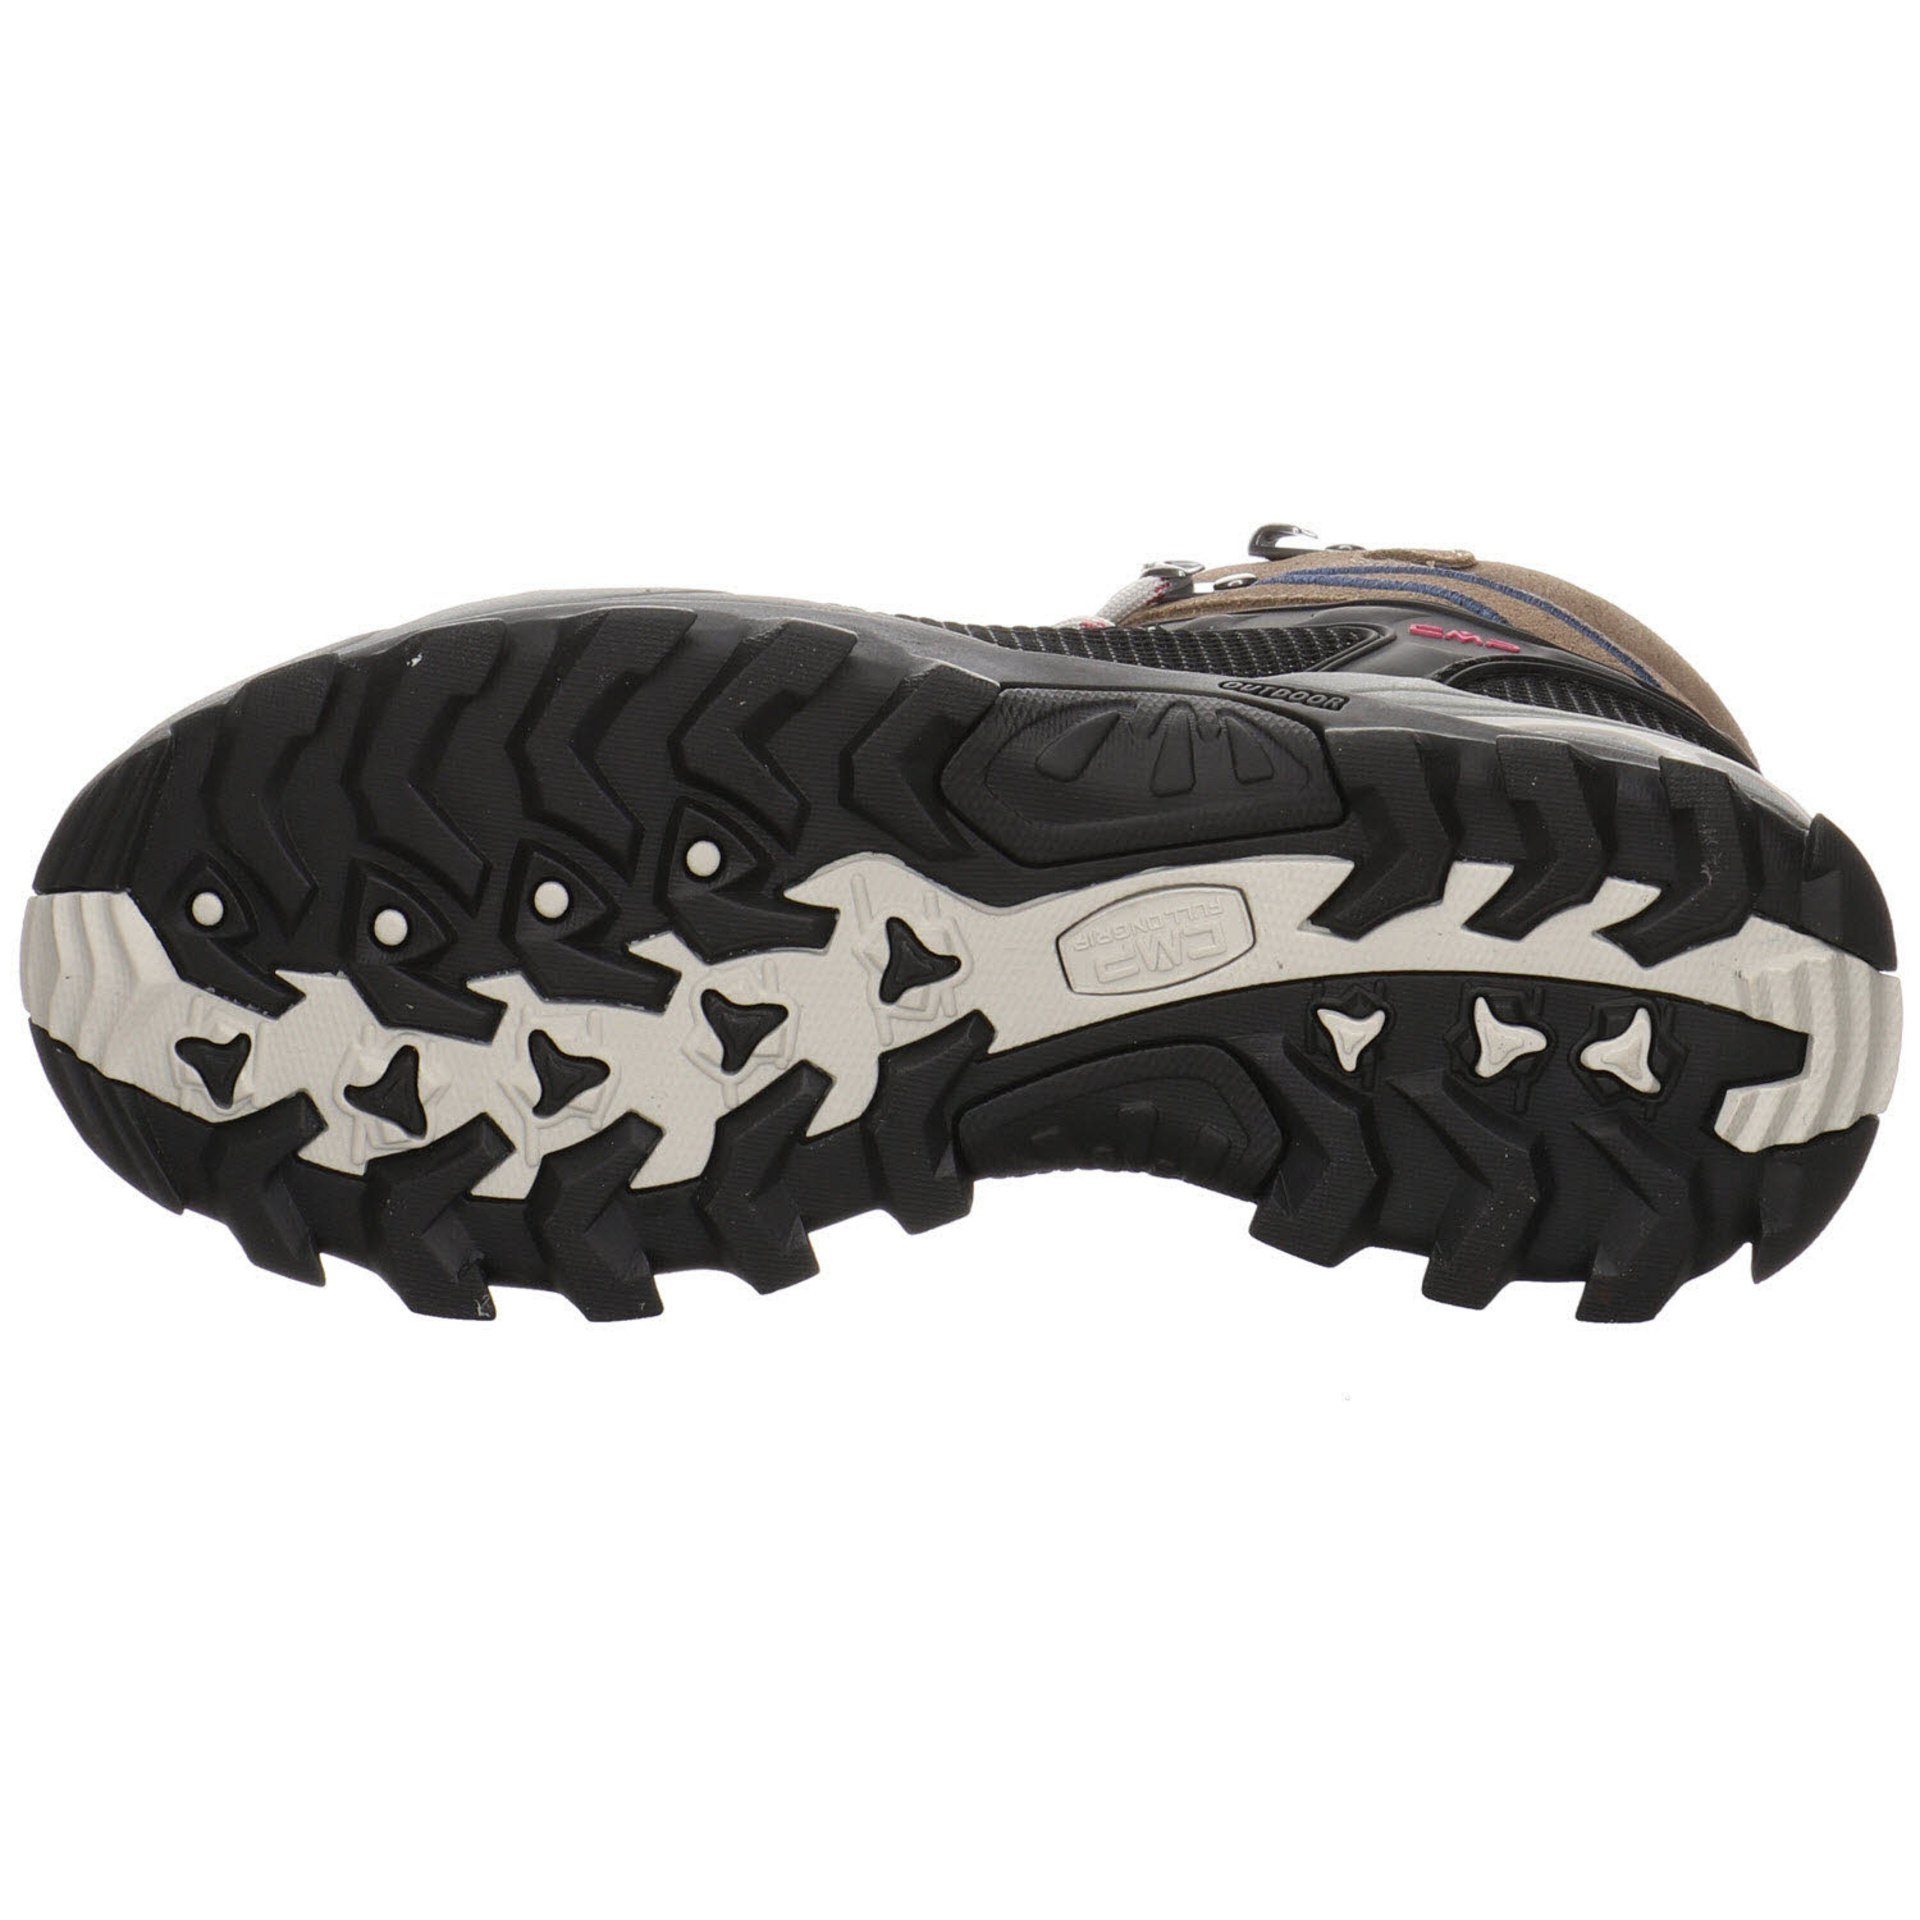 CMP Damen Schuhe Outdoor Rigel Leder-/Textilkombination Outdoorschuh Mid Outdoorschuh CASTORO